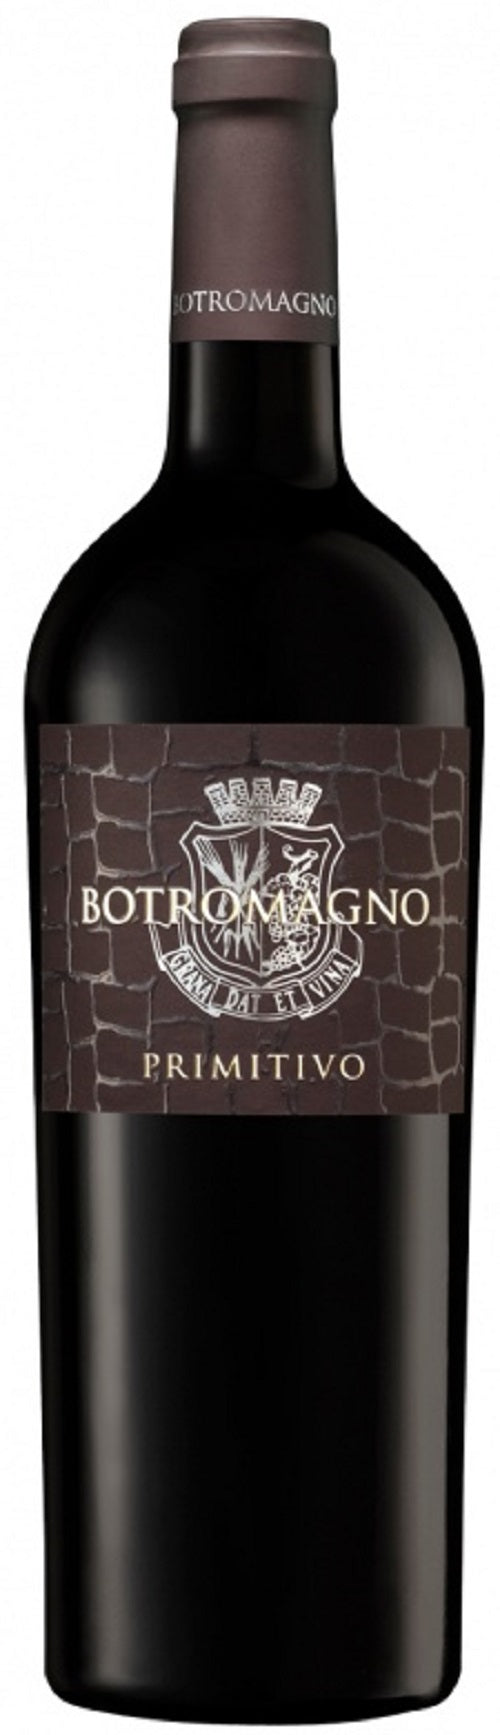 Botromagno Primitivo 2019